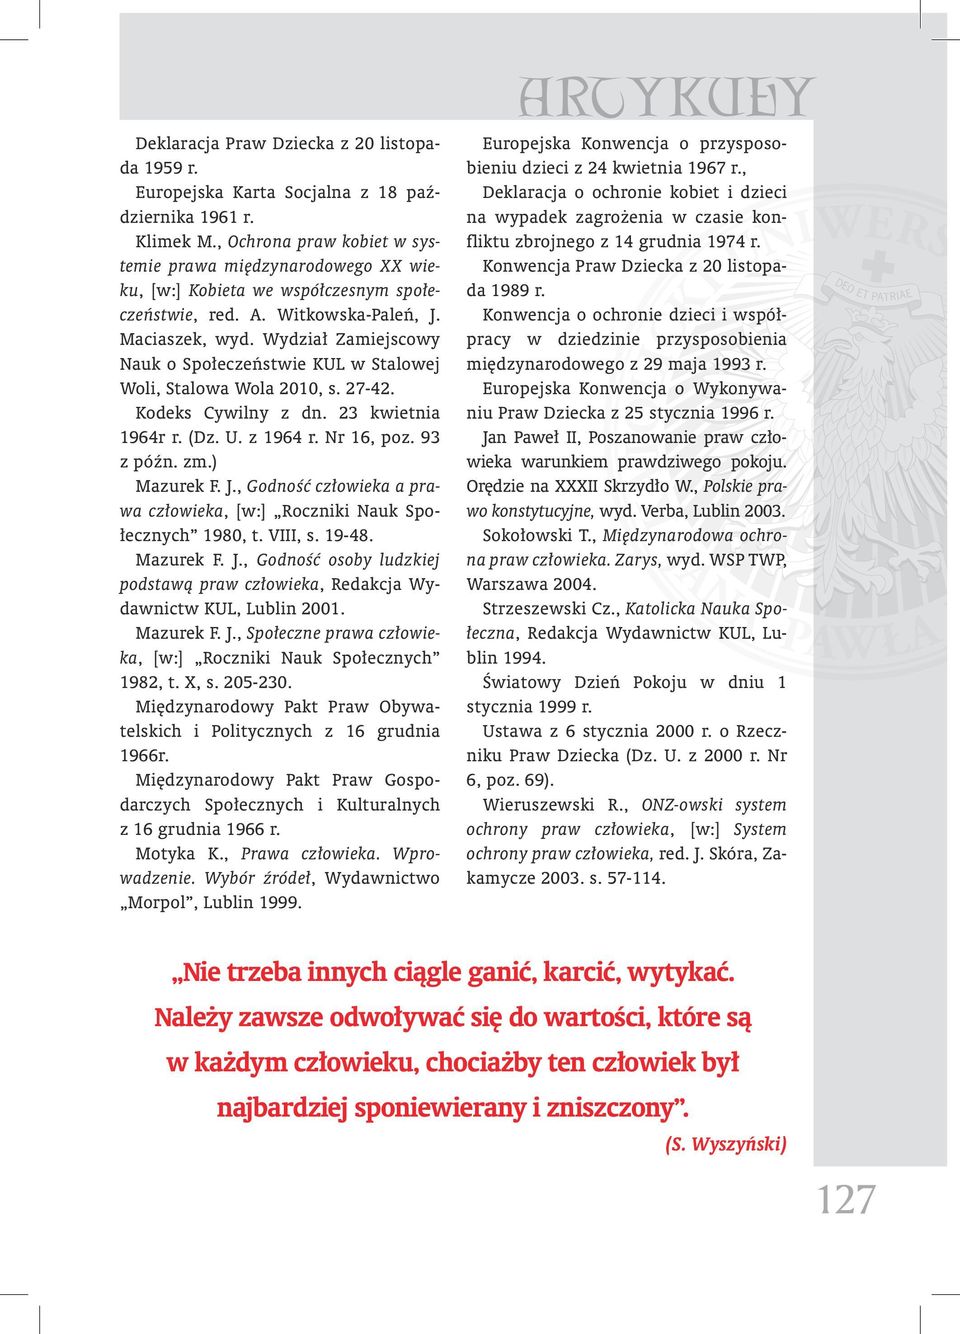 Wydział Zamiejscowy Nauk o Społeczeństwie KUL w Stalowej Woli, Stalowa Wola 2010, s. 27-42. Kodeks Cywilny z dn. 23 kwietnia 1964r r. (Dz. U. z 1964 r. Nr 16, poz. 93 z późn. zm.) Mazurek F. J.